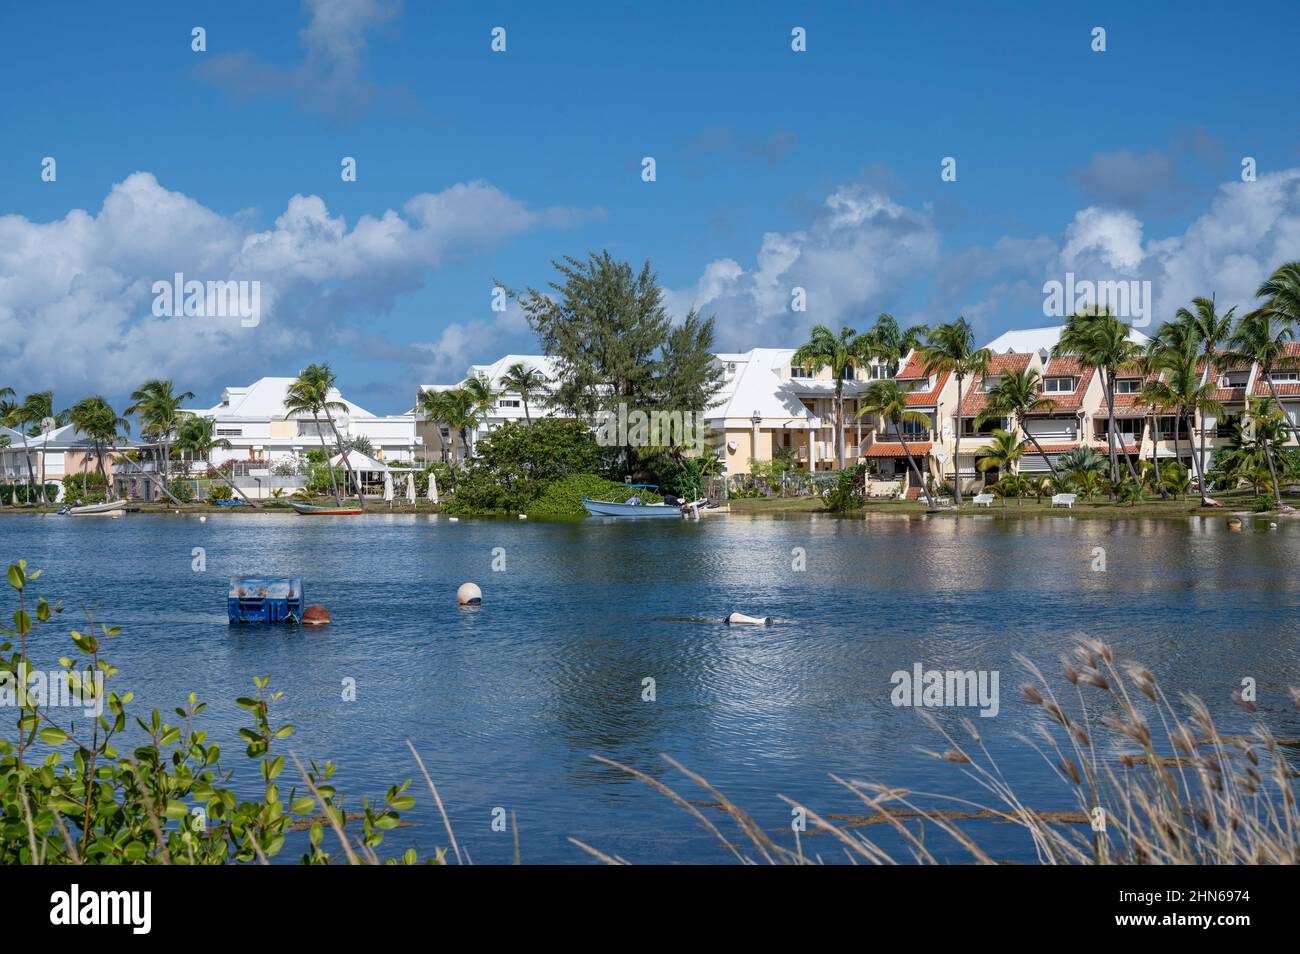 The inner lagoon of Saint-Martin / Sint Maarten near Nettle Bay / Baie Nettlé Stock Photo